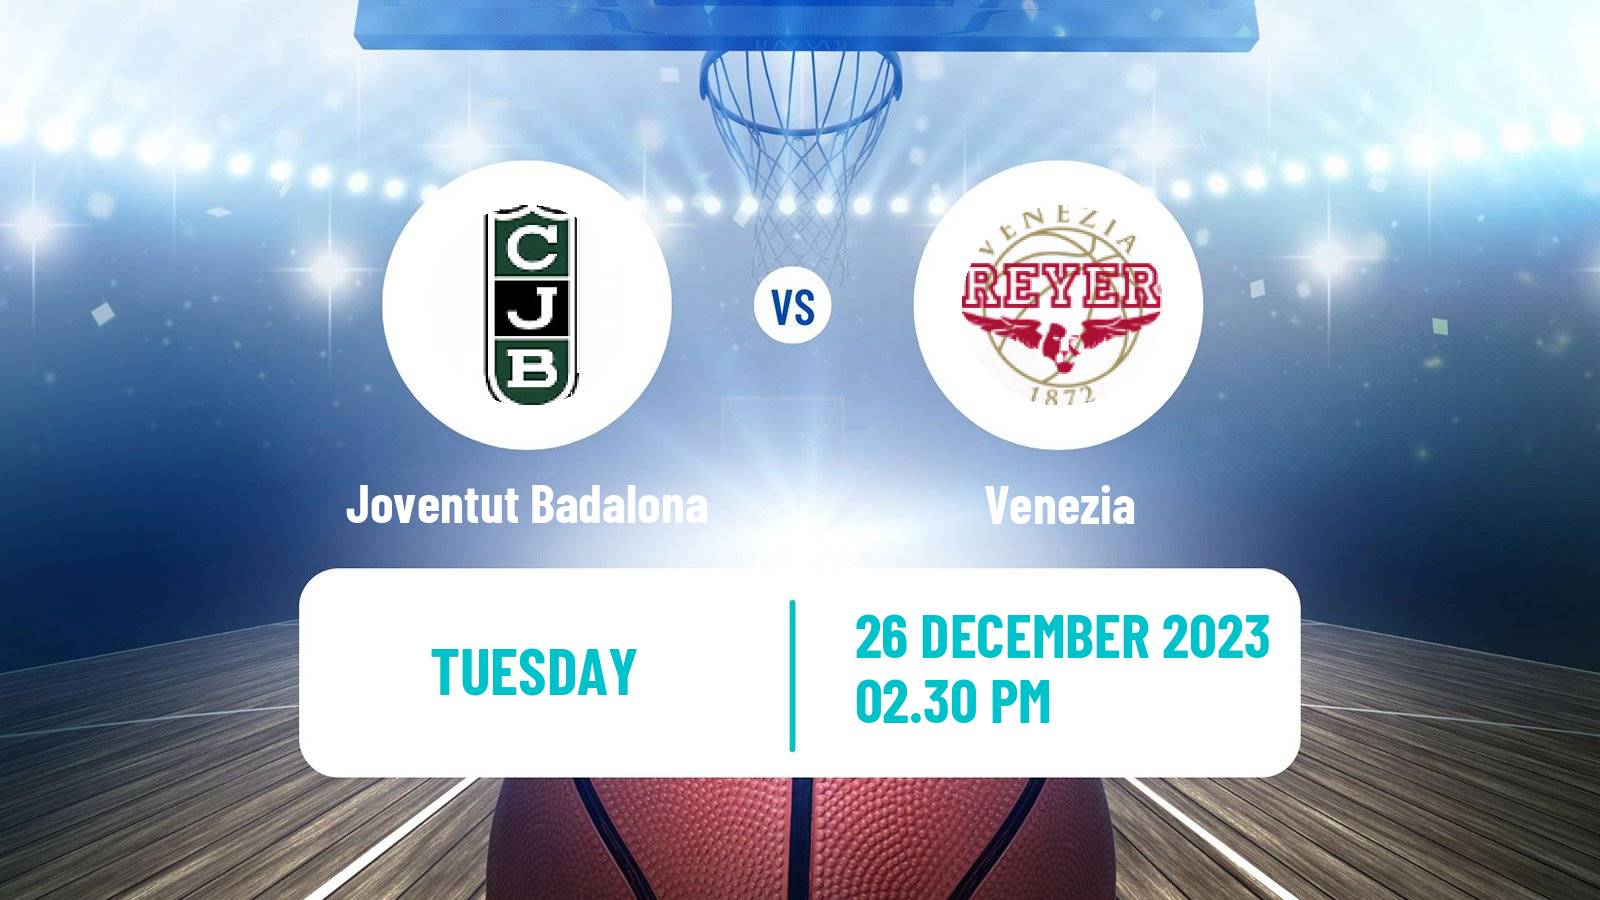 Basketball Eurocup Joventut Badalona - Venezia